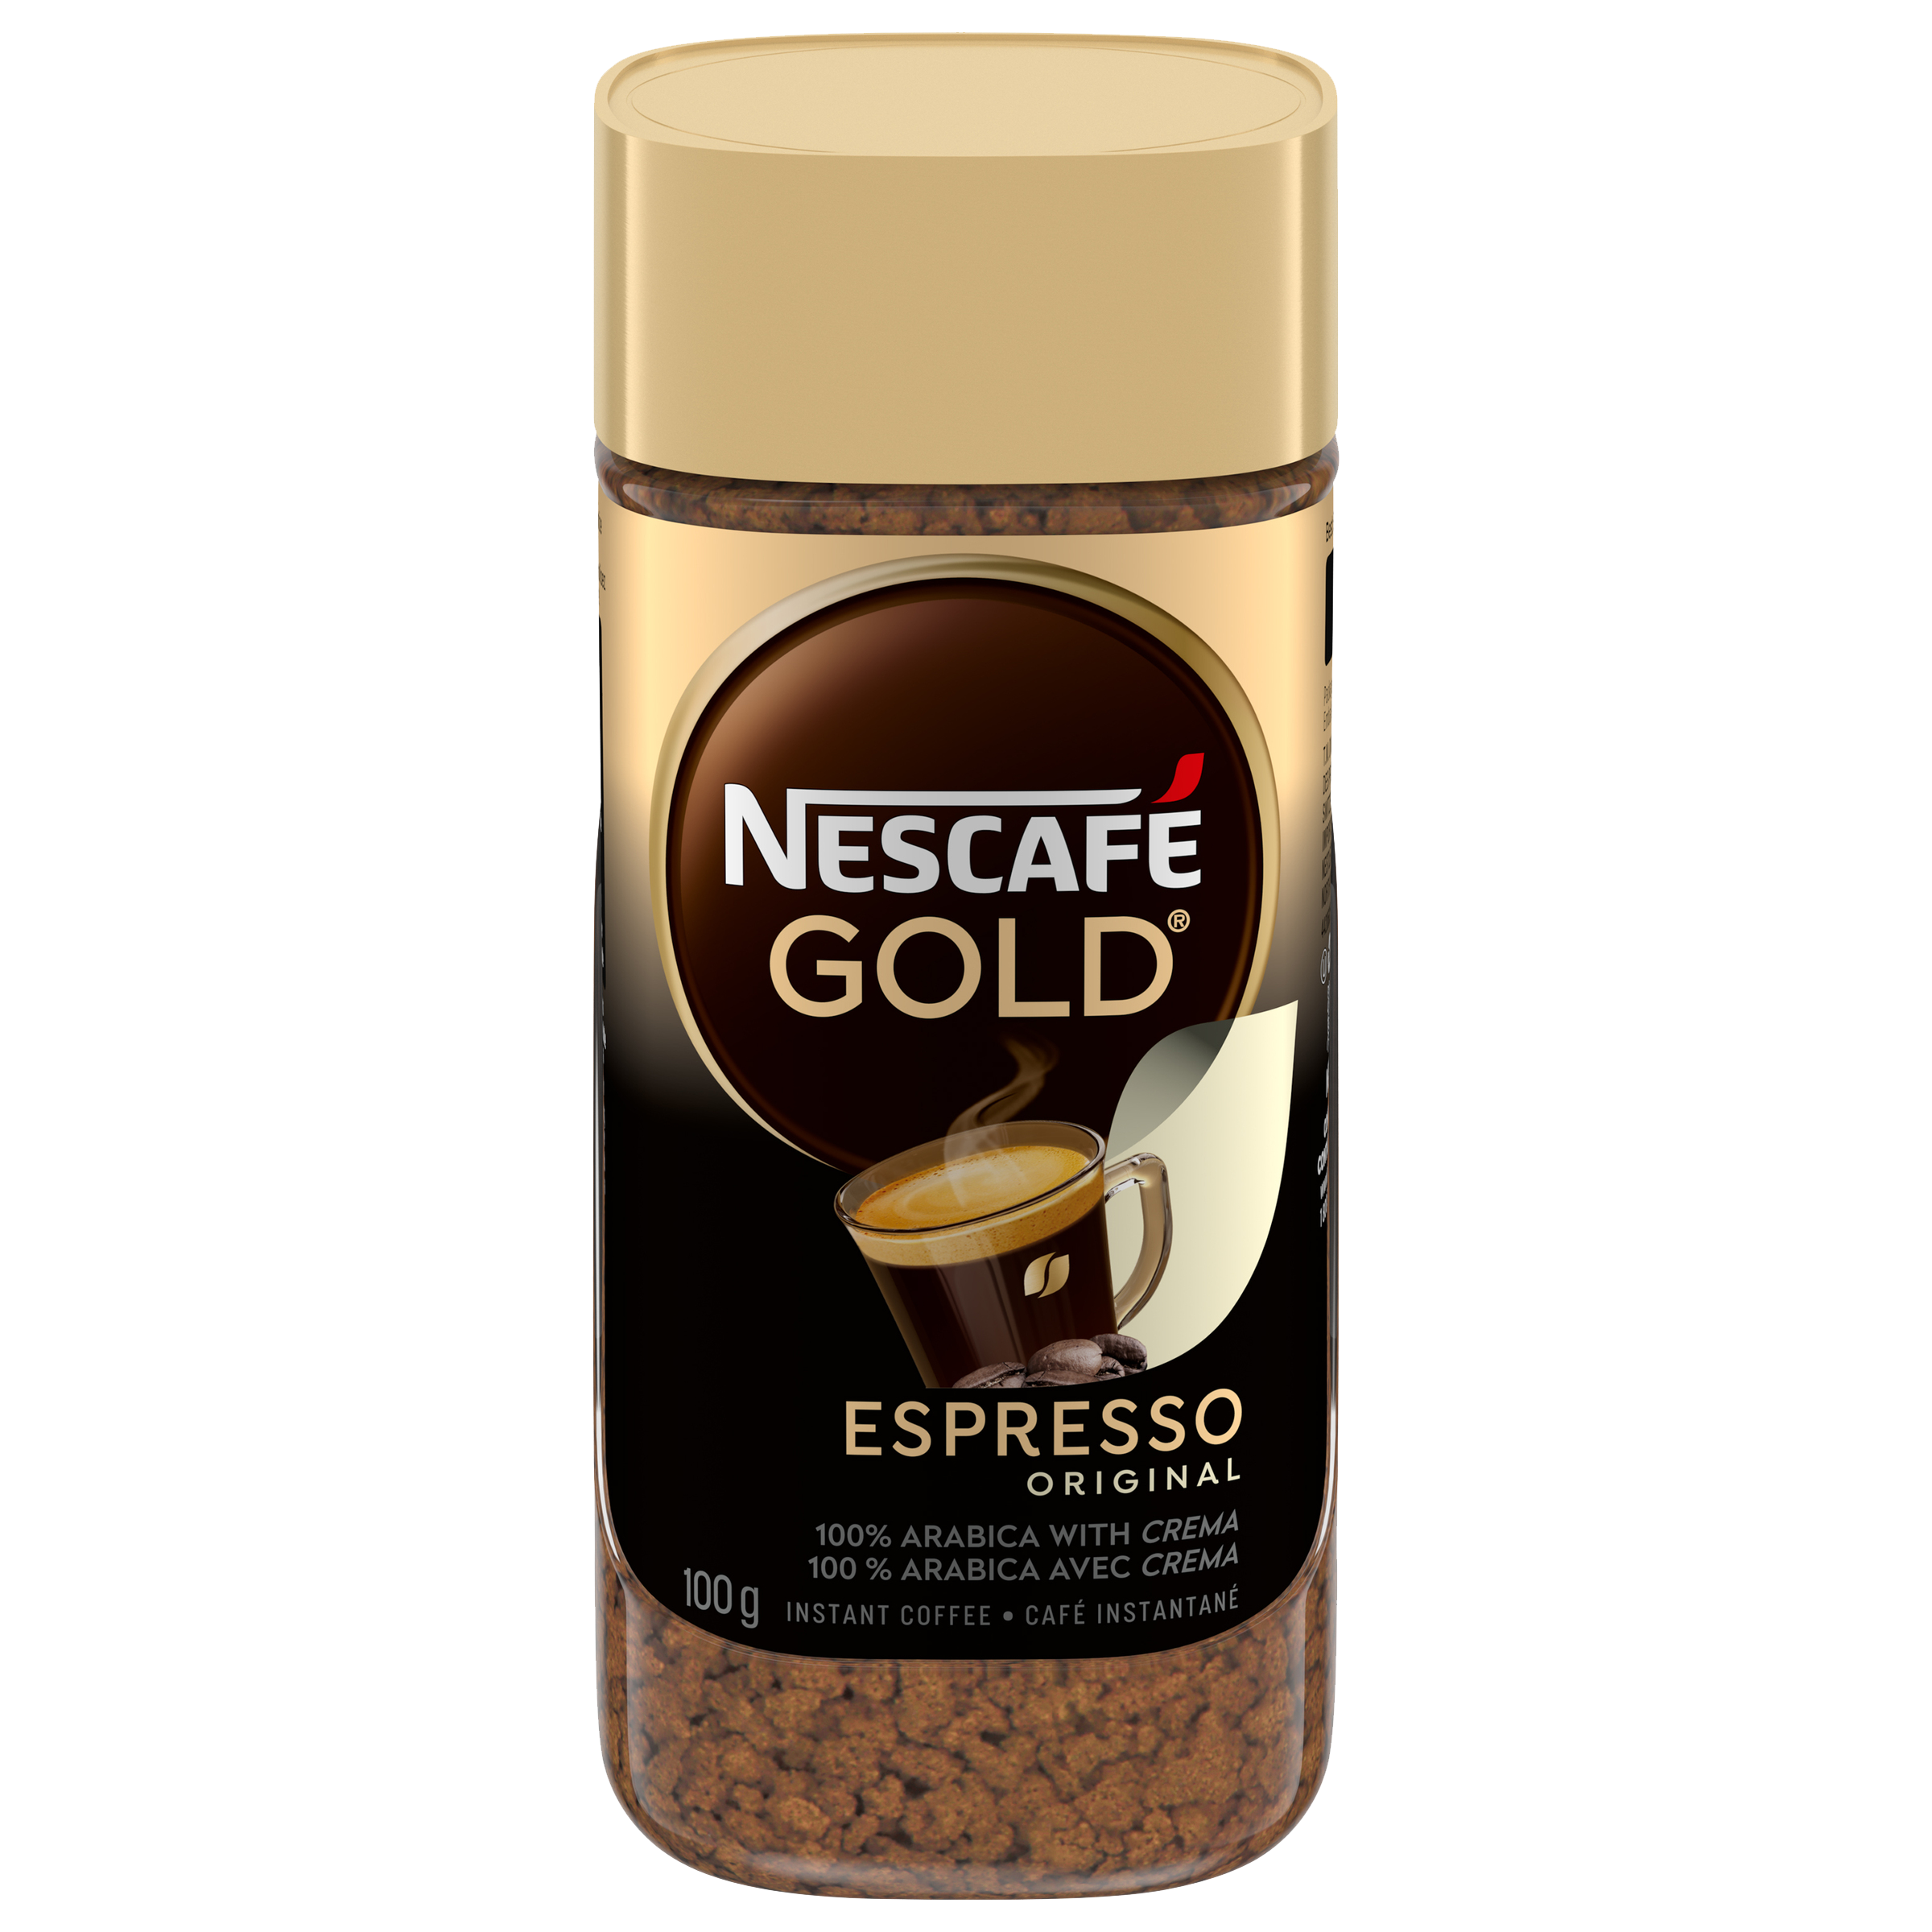 NESCAFÉ GOLD Espresso Instant Coffee | Nestlé Canada